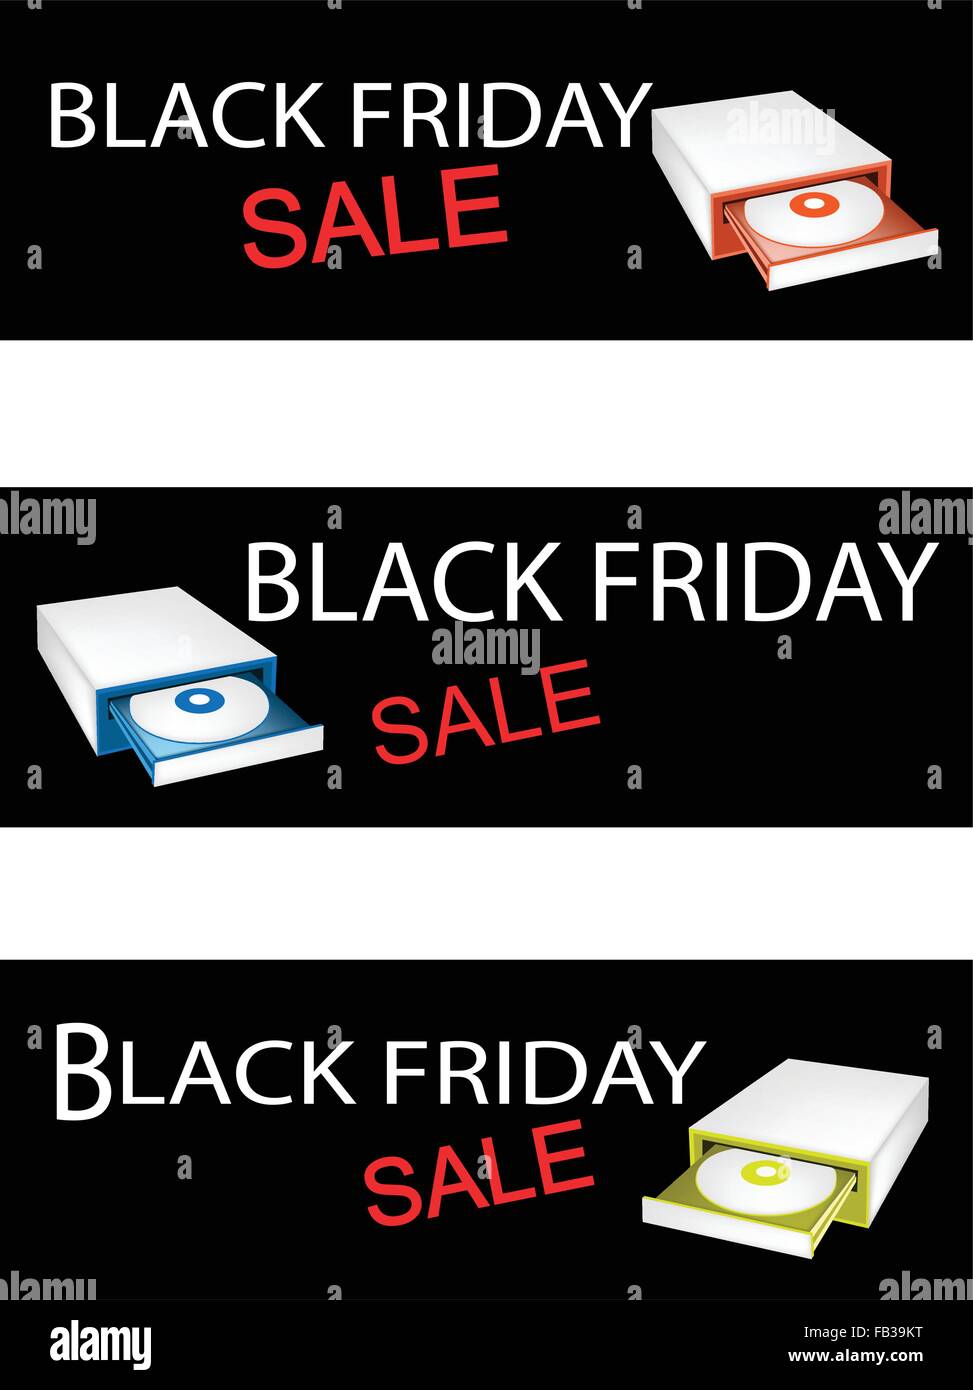 Illustration du CD-ROM de l'ordinateur disque dur sur le Black Friday Shopping des étiquettes pour démarrer la saison d'achats de Noël. Illustration de Vecteur